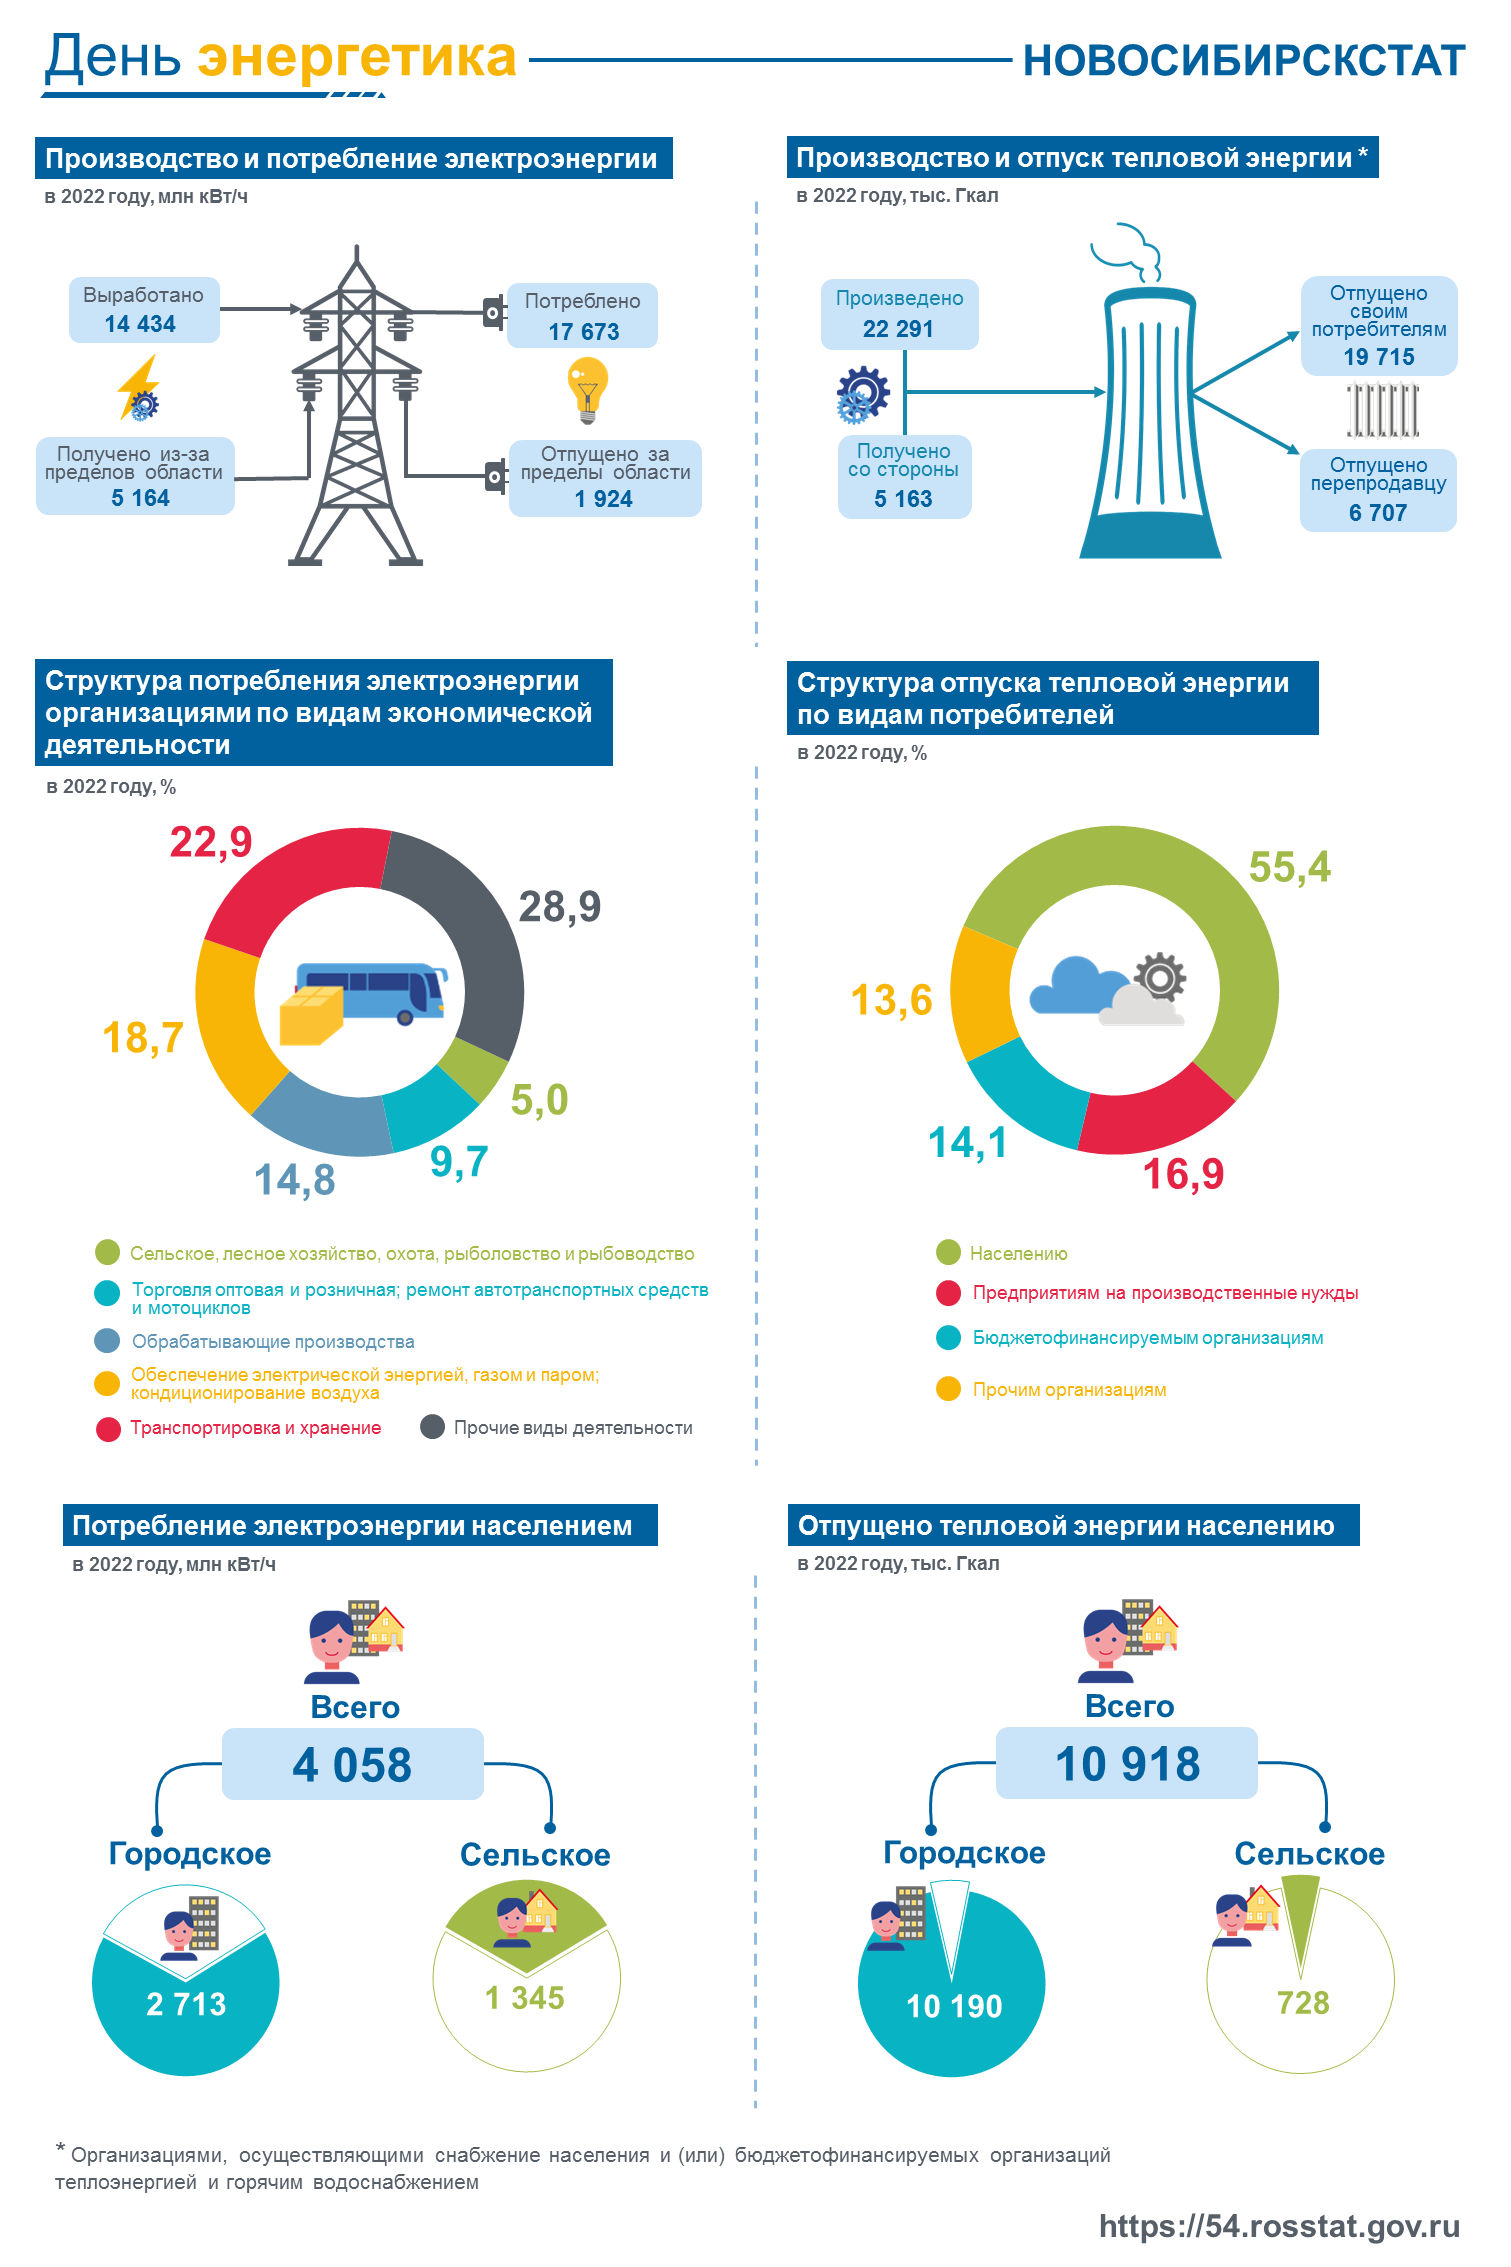 Производство и потребление электрической и тепловой энергии в Новосибирской области в 2022 году